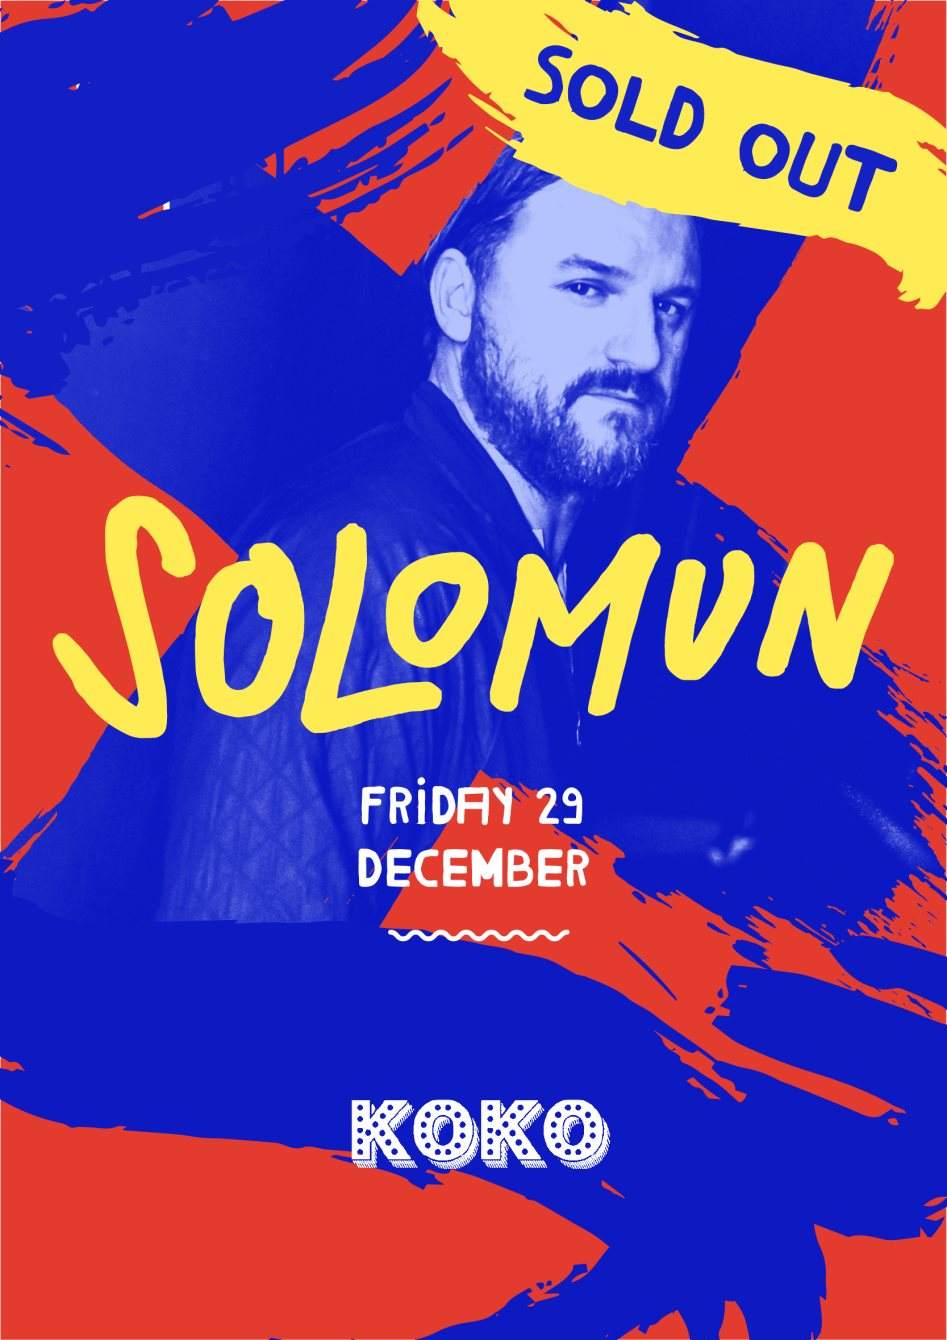 Solomun at Koko - Sold Out - Página frontal